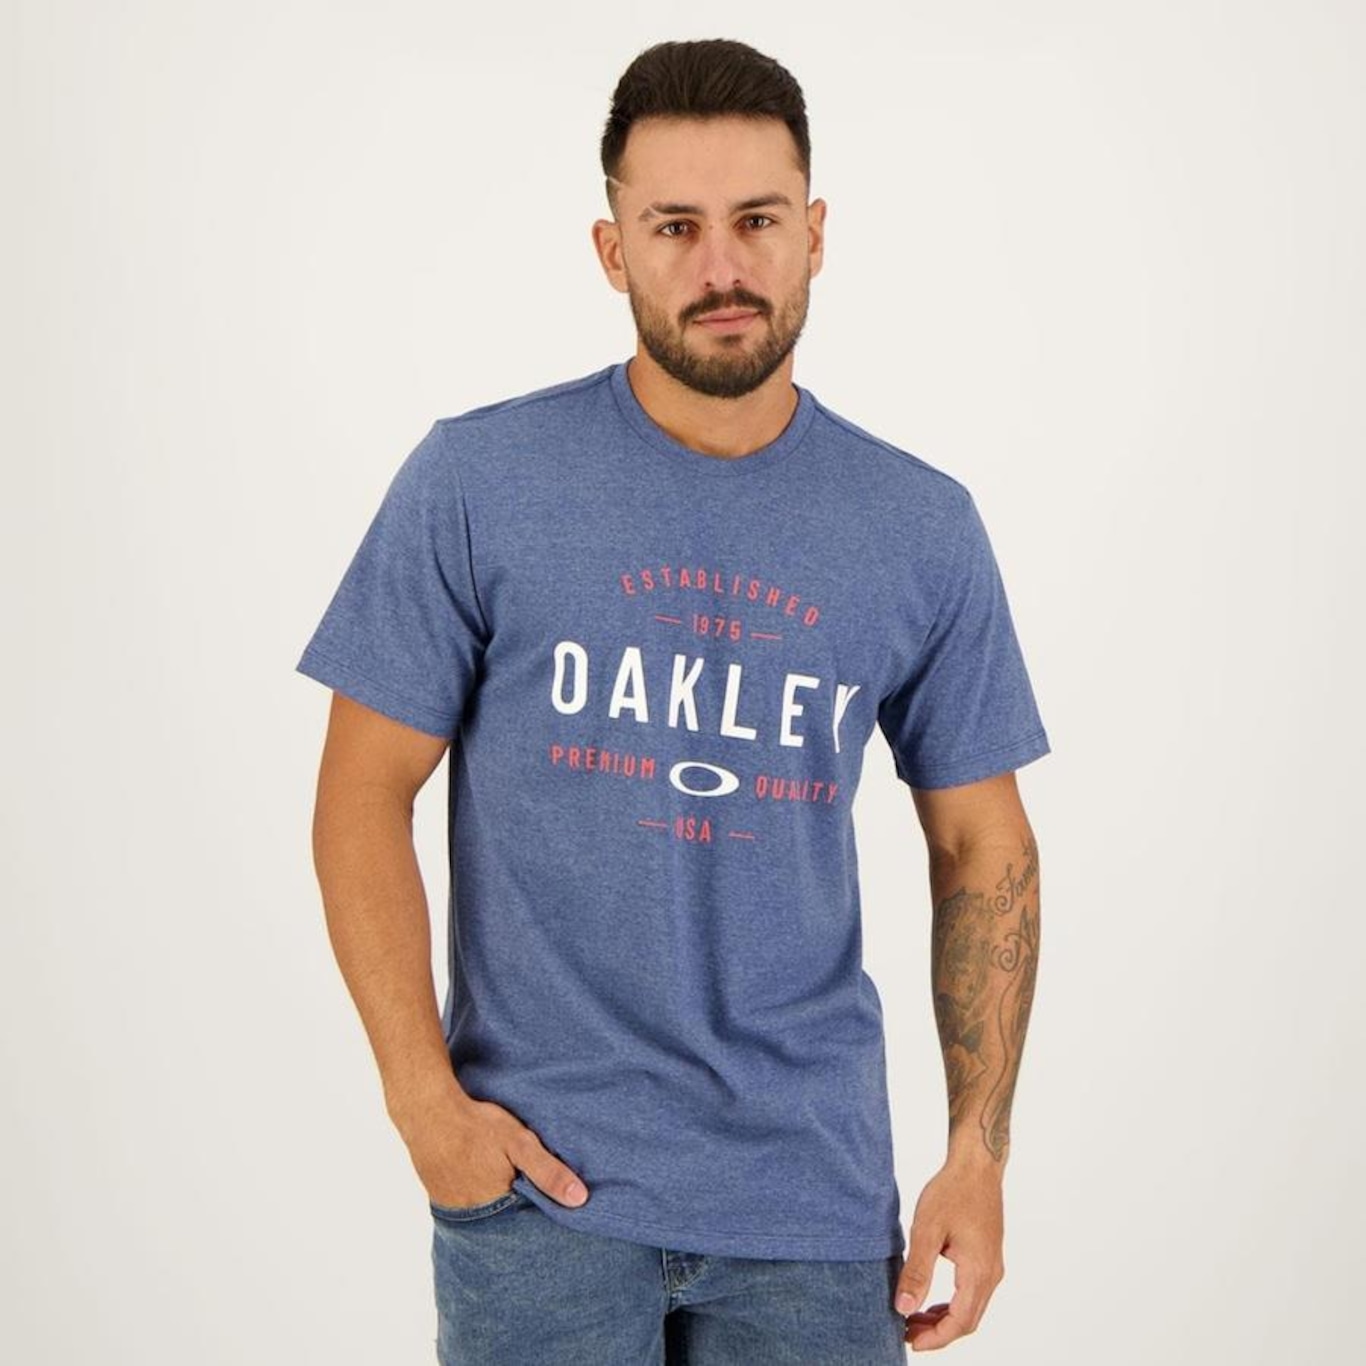 Camiseta Masculina Da Oakley com Preços Incríveis no Shoptime